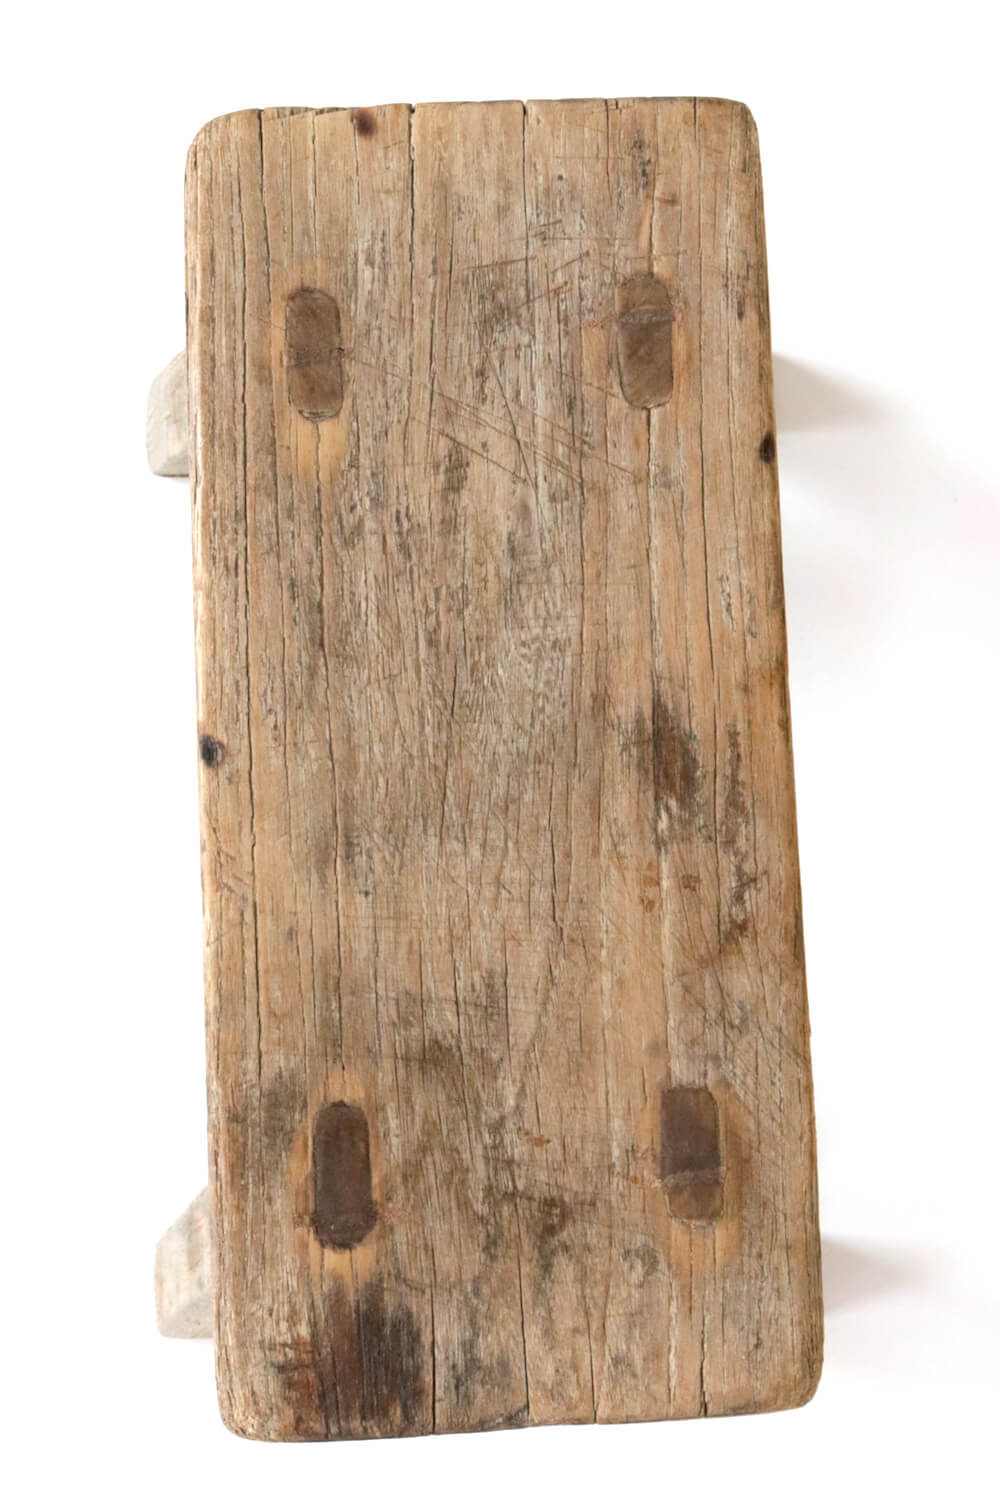 Holzschemel antik rustikal 